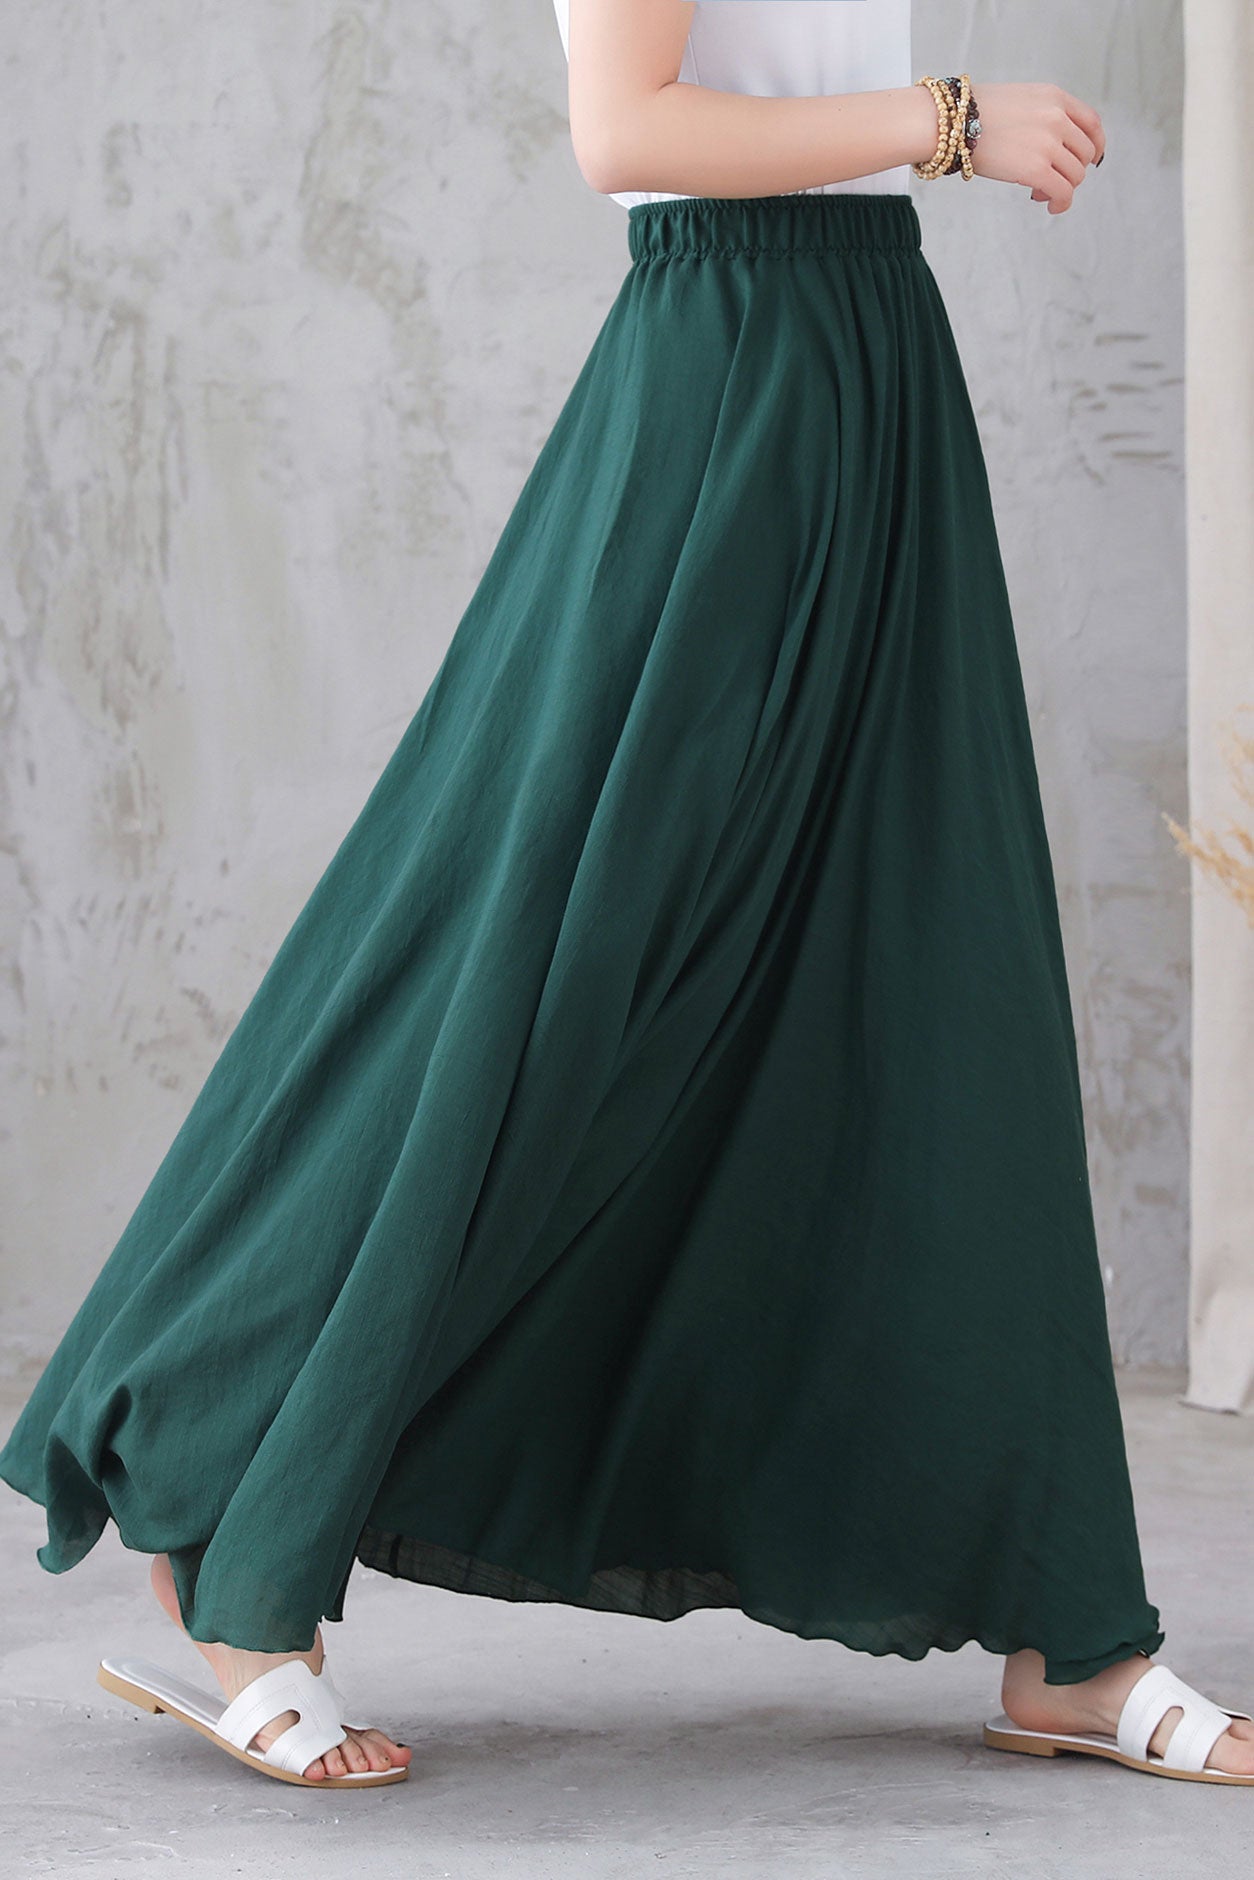 Elastic Waist Green Linen Long Skirt 3296